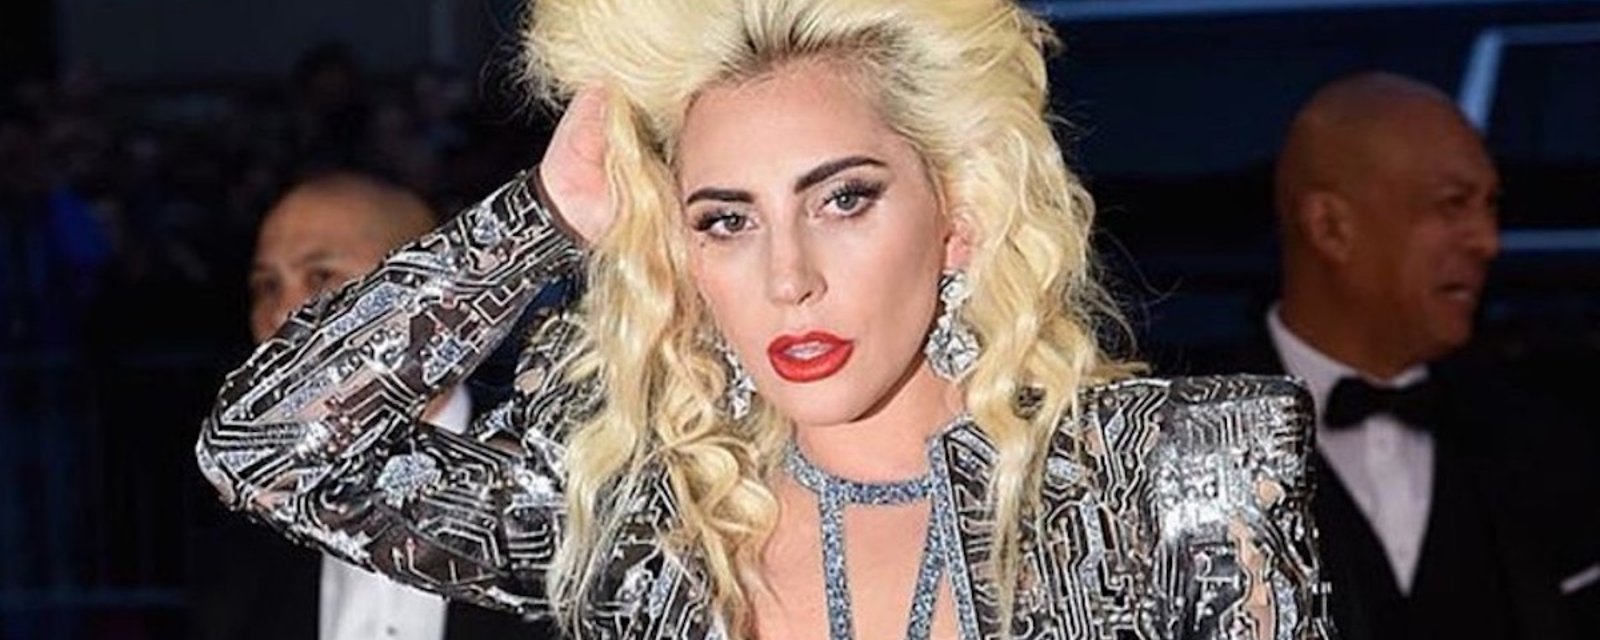 Lady Gaga nous présente son nouveau chum... OMG! 